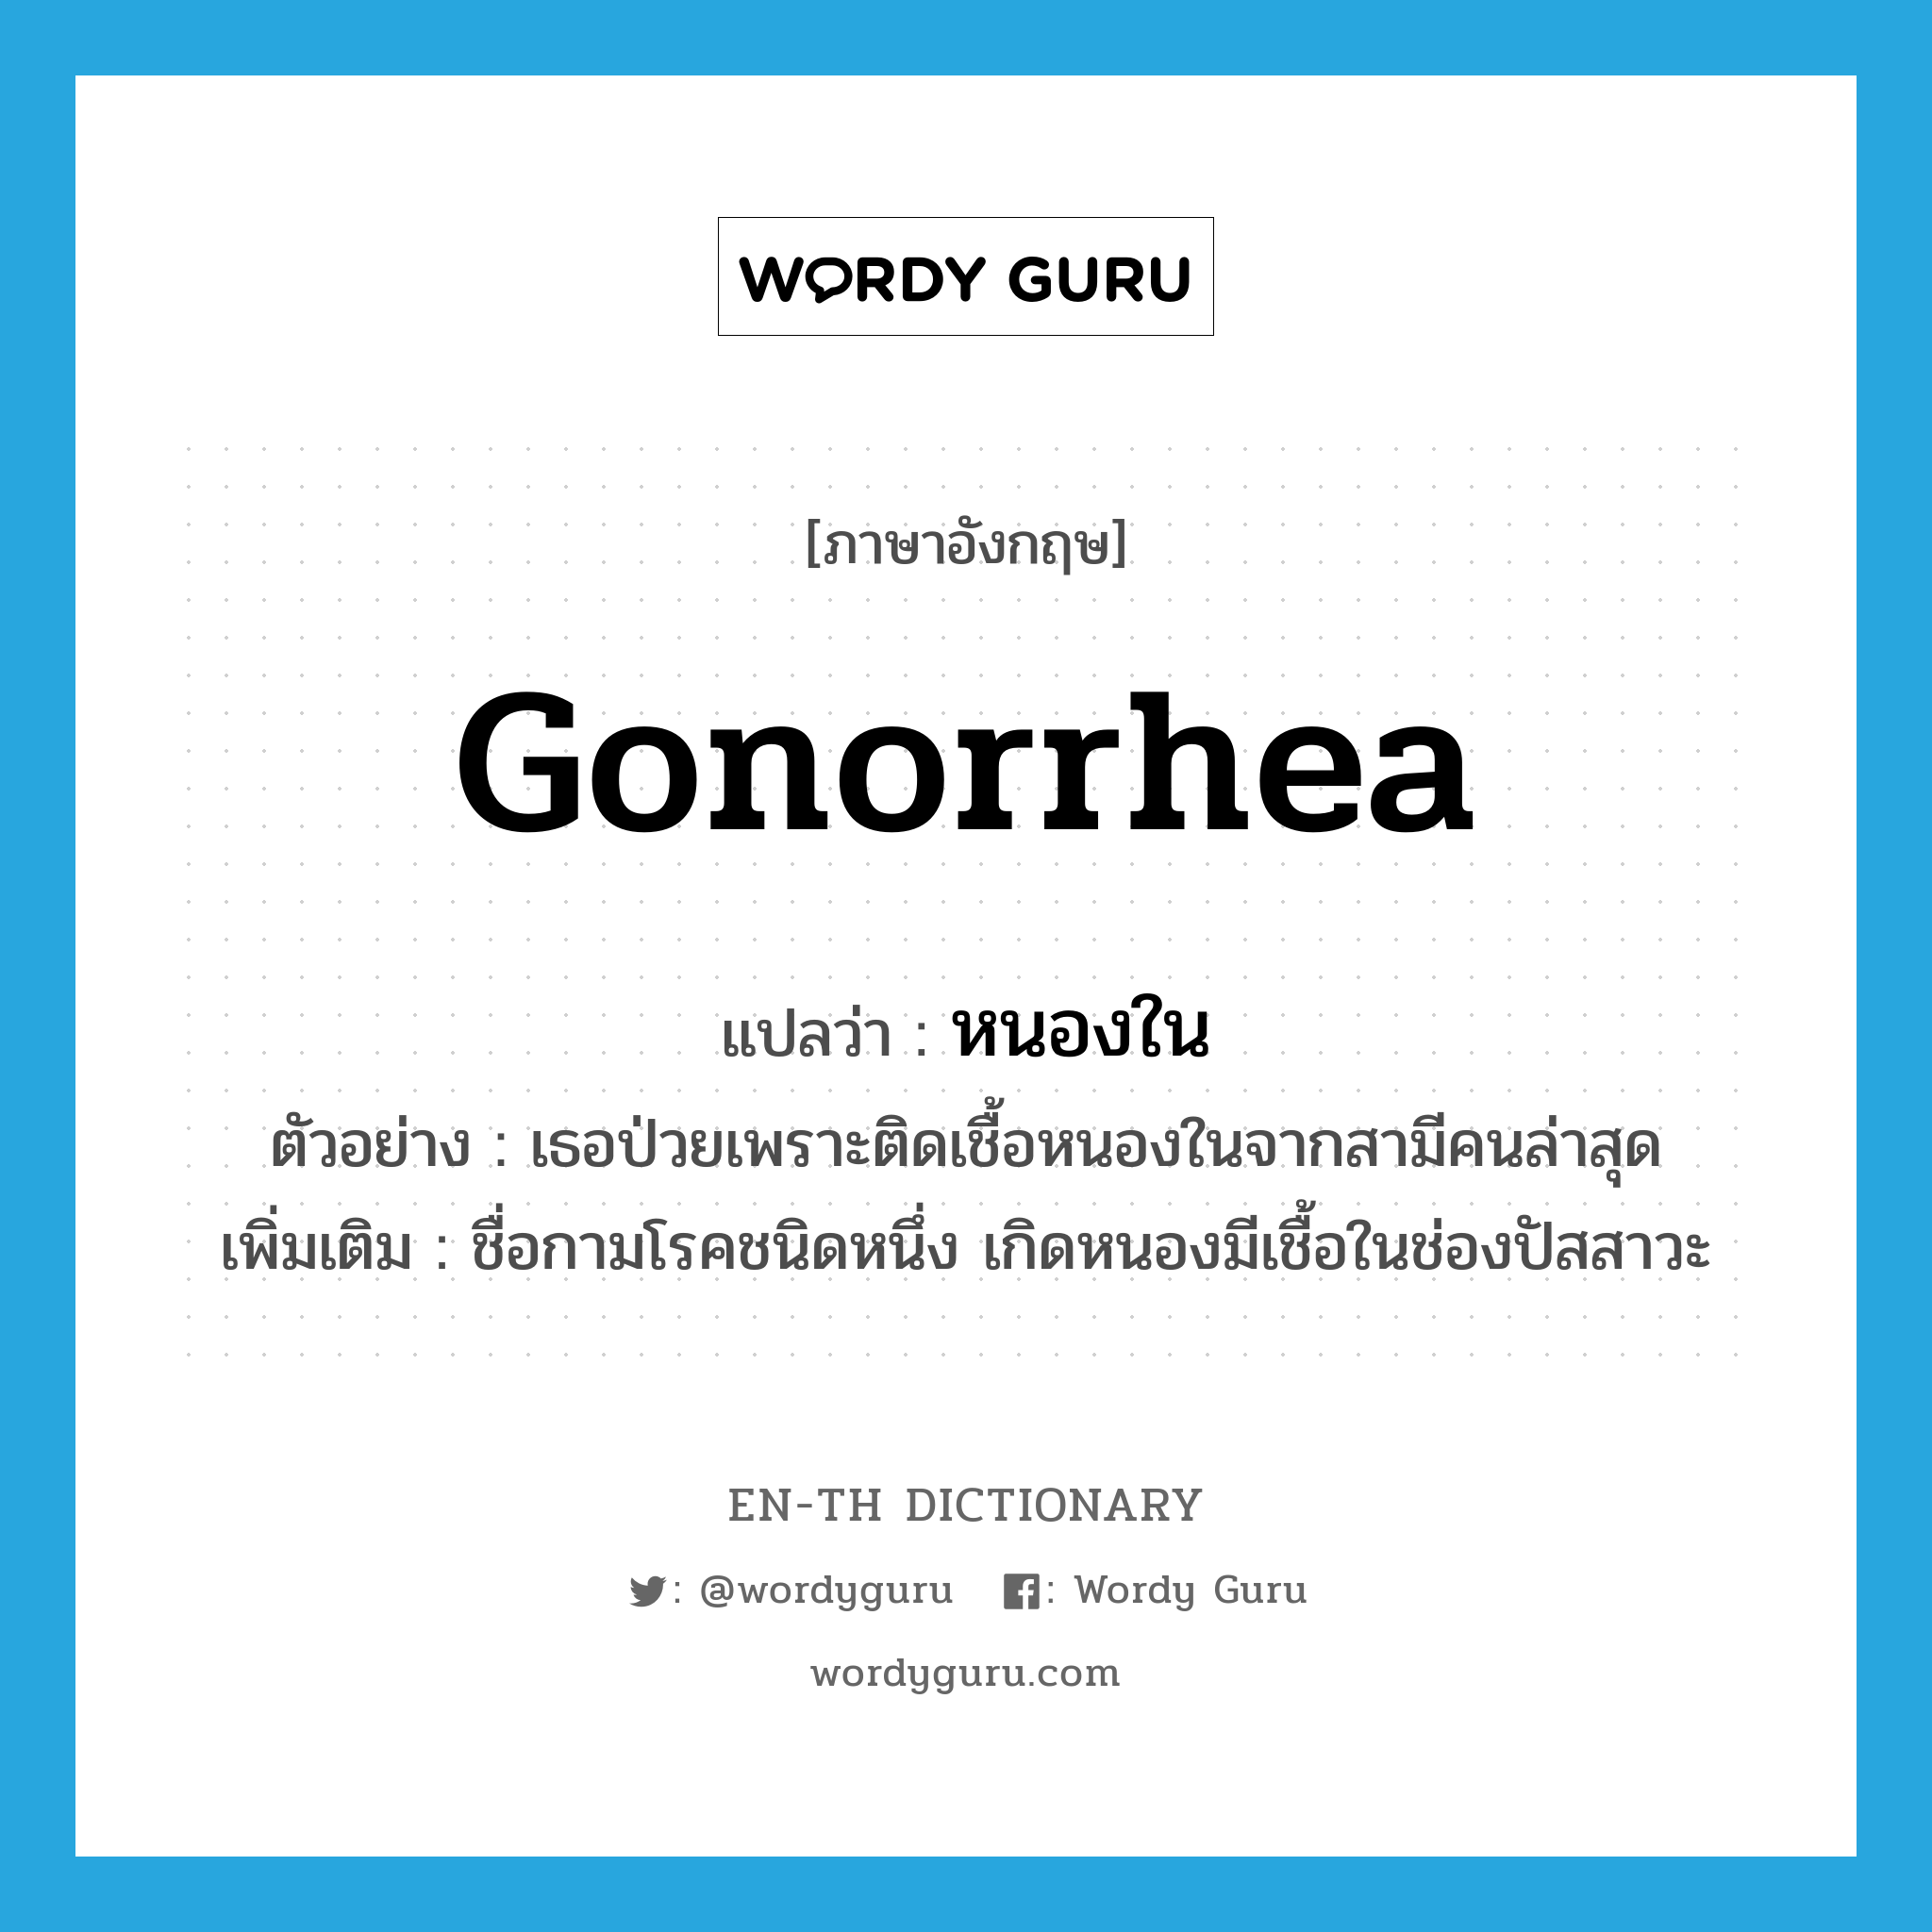 gonorrhea แปลว่า?, คำศัพท์ภาษาอังกฤษ gonorrhea แปลว่า หนองใน ประเภท N ตัวอย่าง เธอป่วยเพราะติดเชื้อหนองในจากสามีคนล่าสุด เพิ่มเติม ชื่อกามโรคชนิดหนึ่ง เกิดหนองมีเชื้อในช่องปัสสาวะ หมวด N